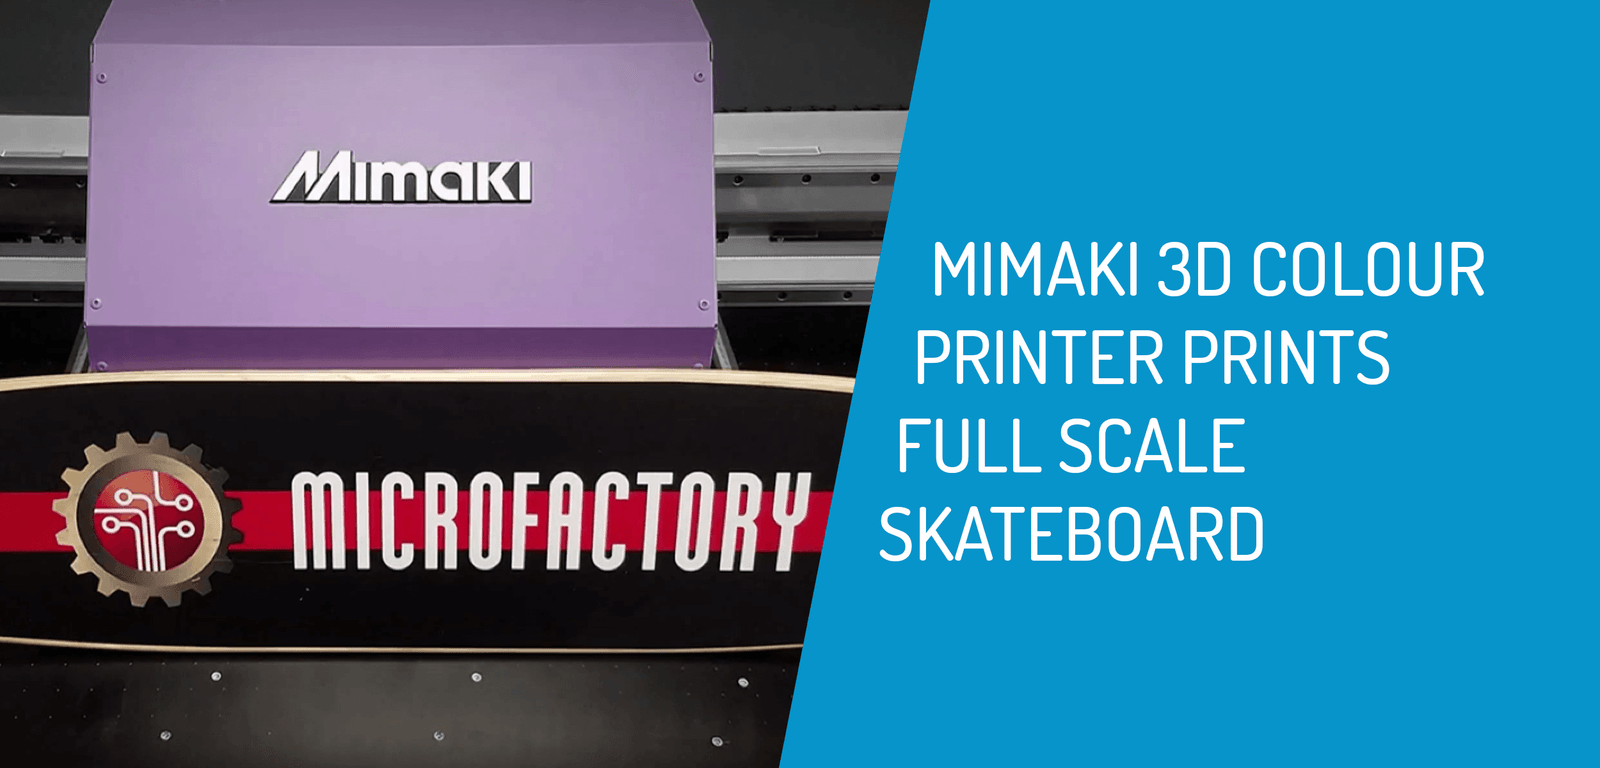 Mimaki 3D Colour Printer Prints a Skateboard